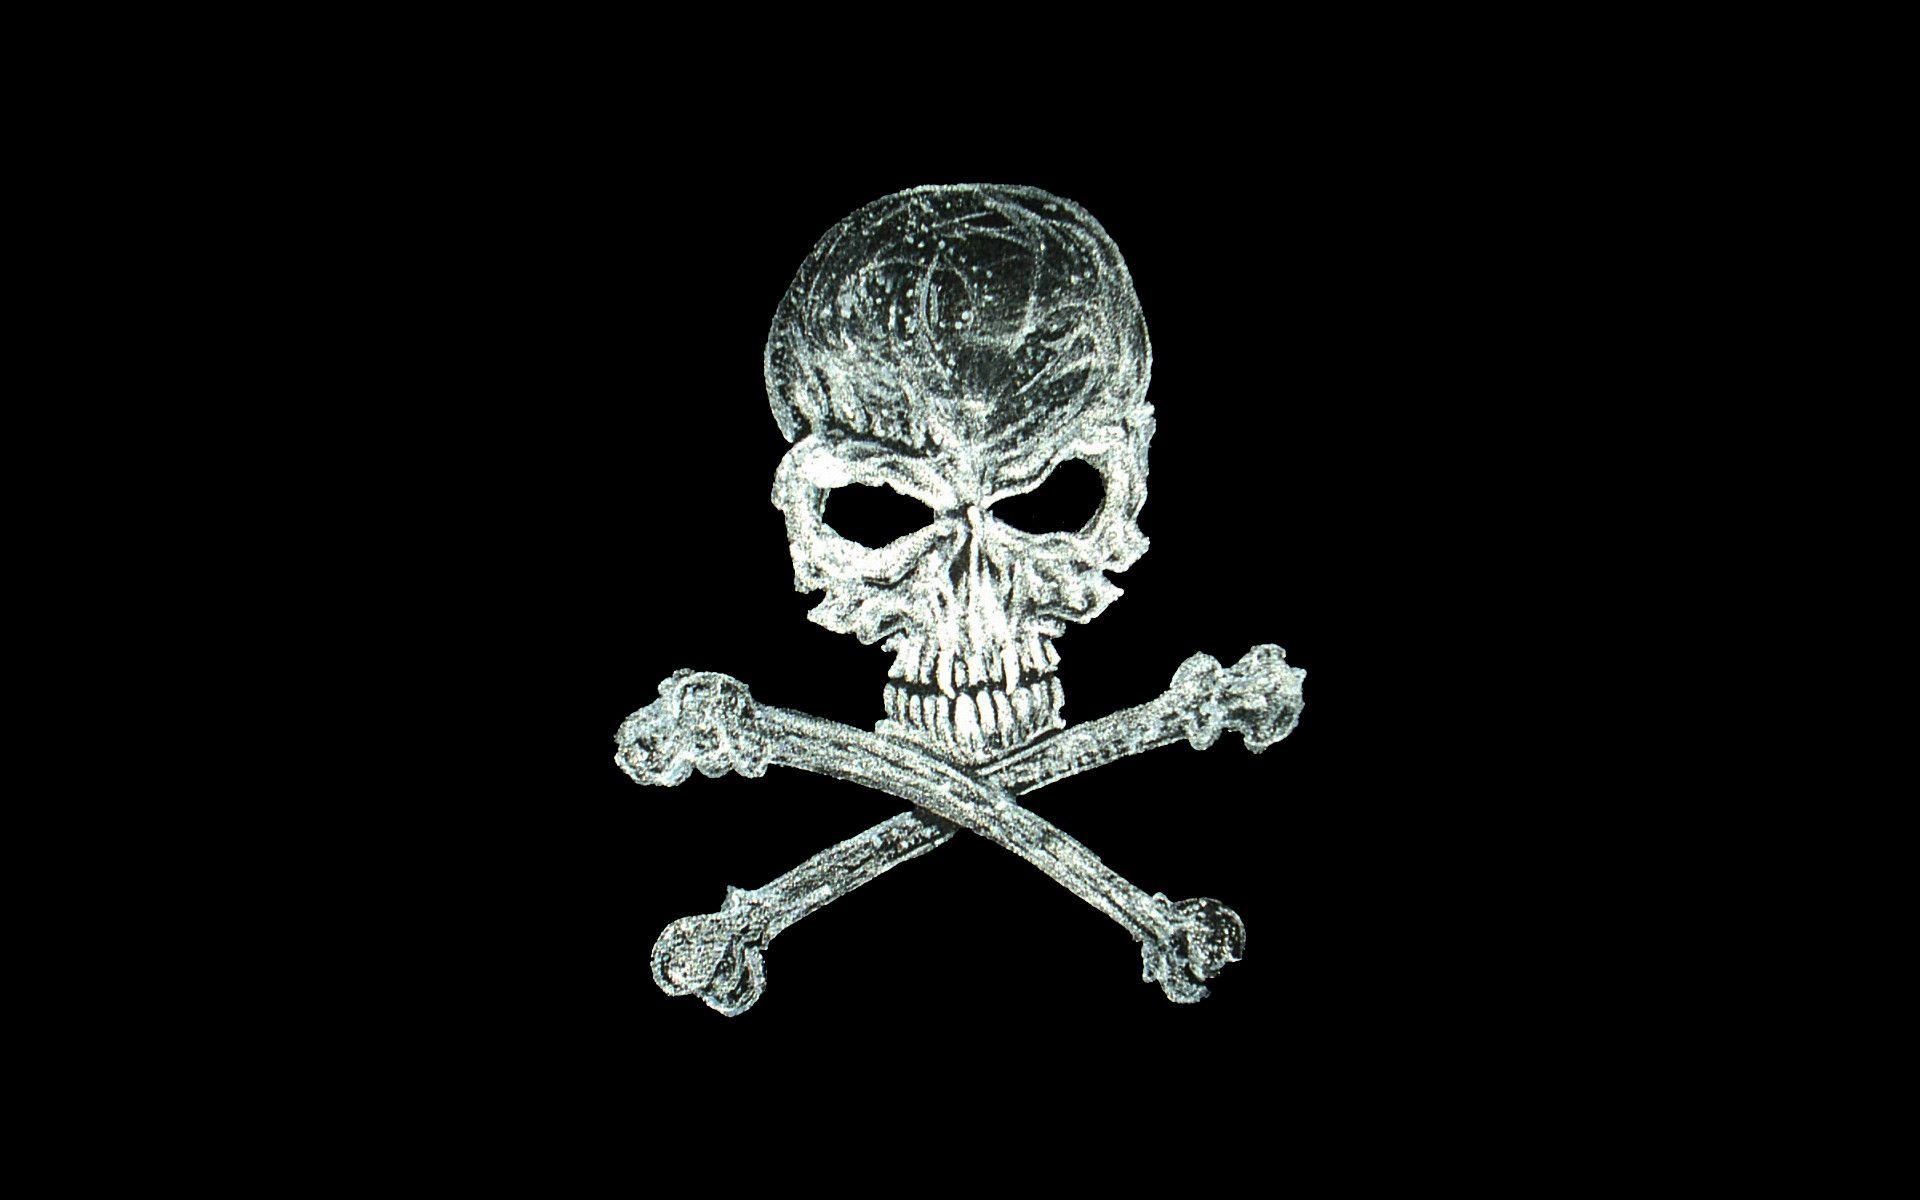 Free Download HD Pirate Skull Wallpaper for Desktop